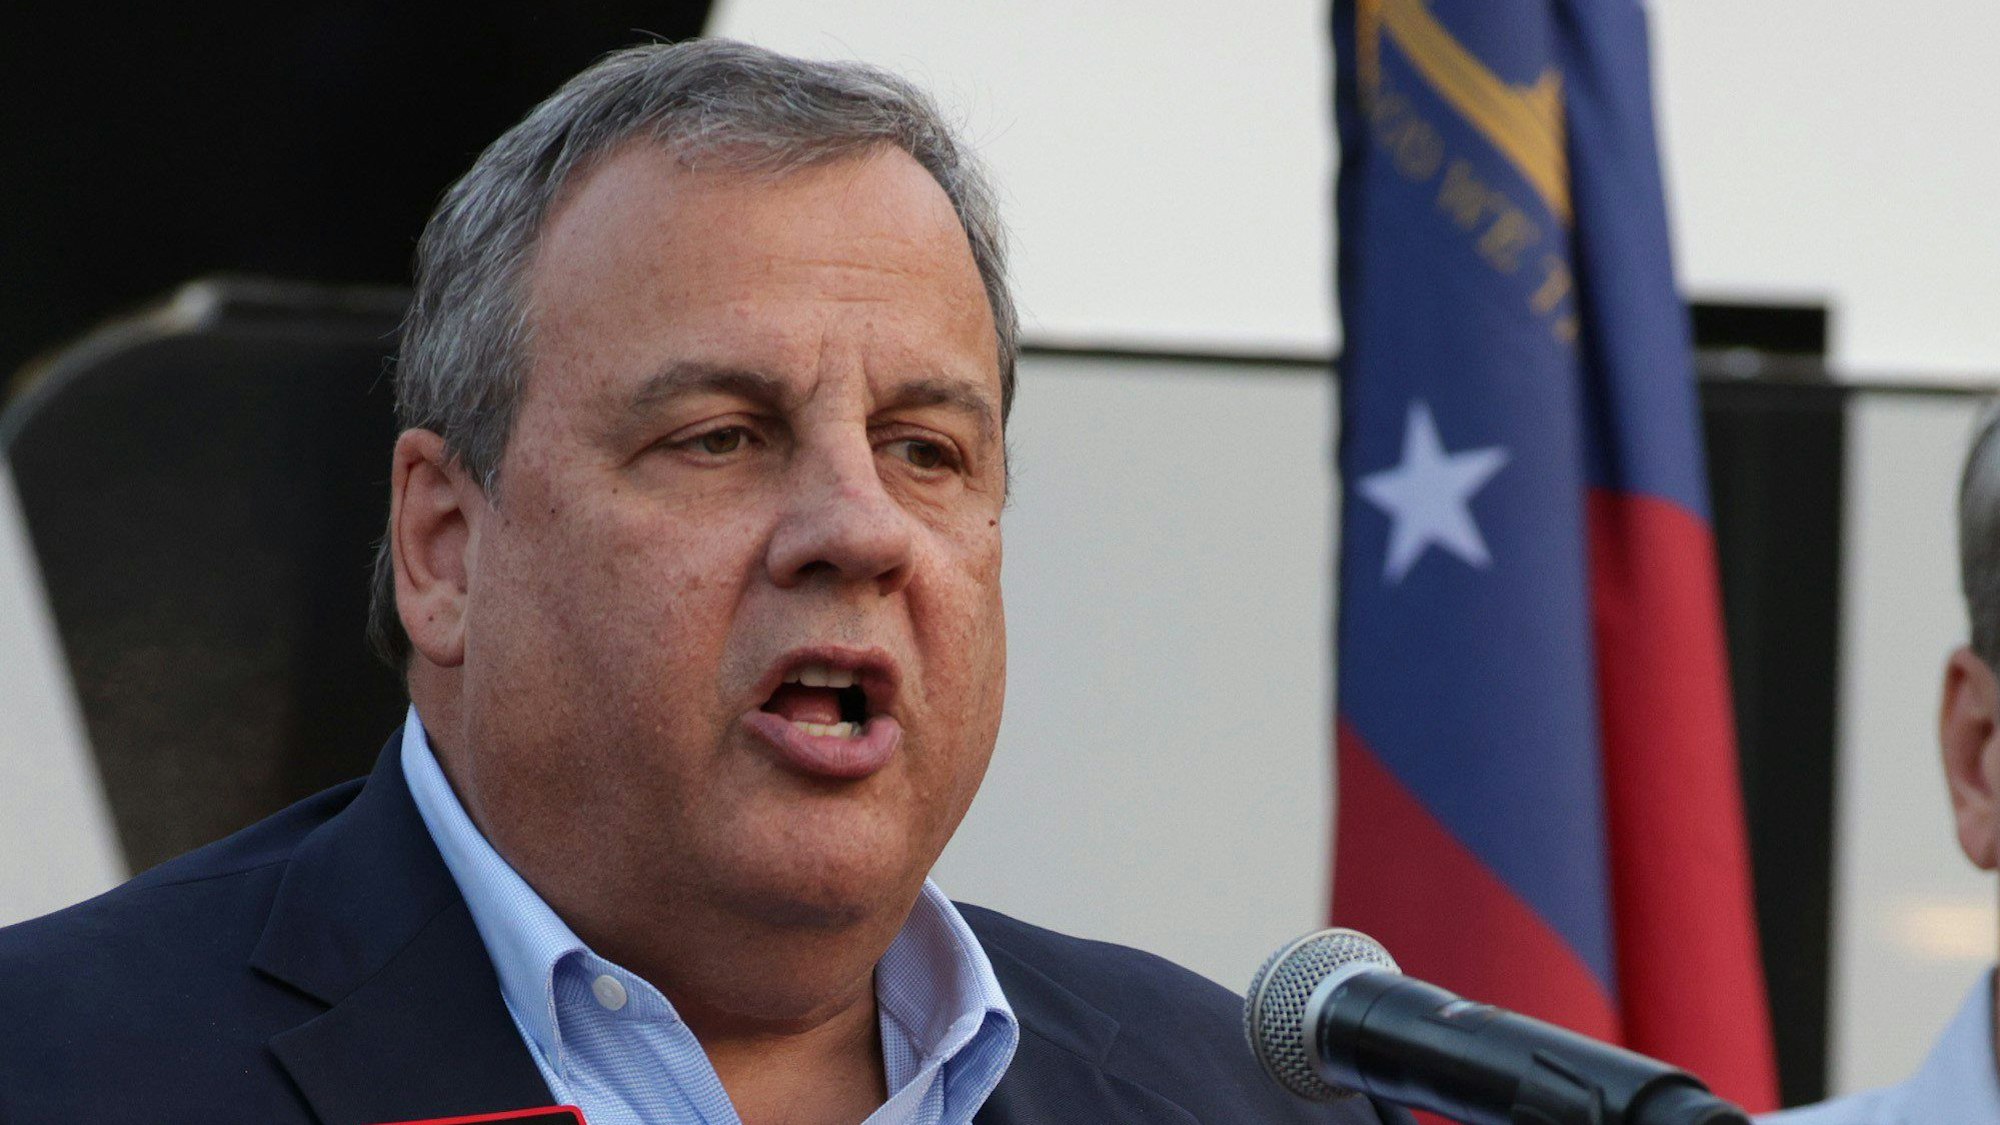 Der ehemalige Gouverneur von New Jersey, Chris Christie, spricht auf einer Wahlkampfveranstaltung in Georgia vor den Midterm-Wahlen in den USA.